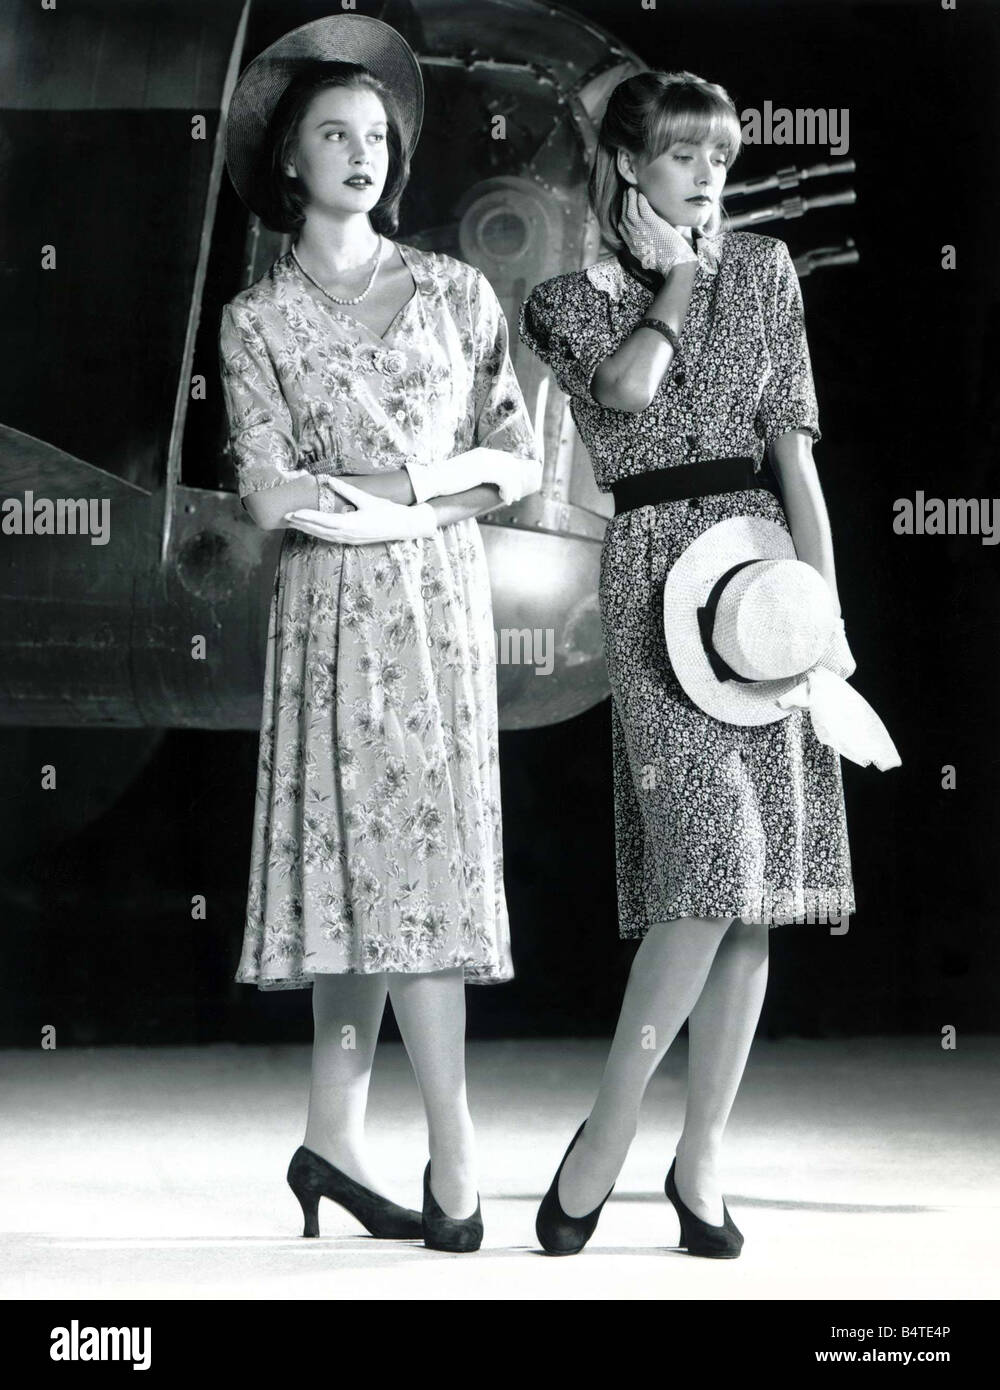 La quarantaine flirty Photographie prise en 1988, mais basé sur un style années 40, circa 1940 robe à fleurs avec des gants chapeaux et talons bijoux collier perles mirrorpix Banque D'Images